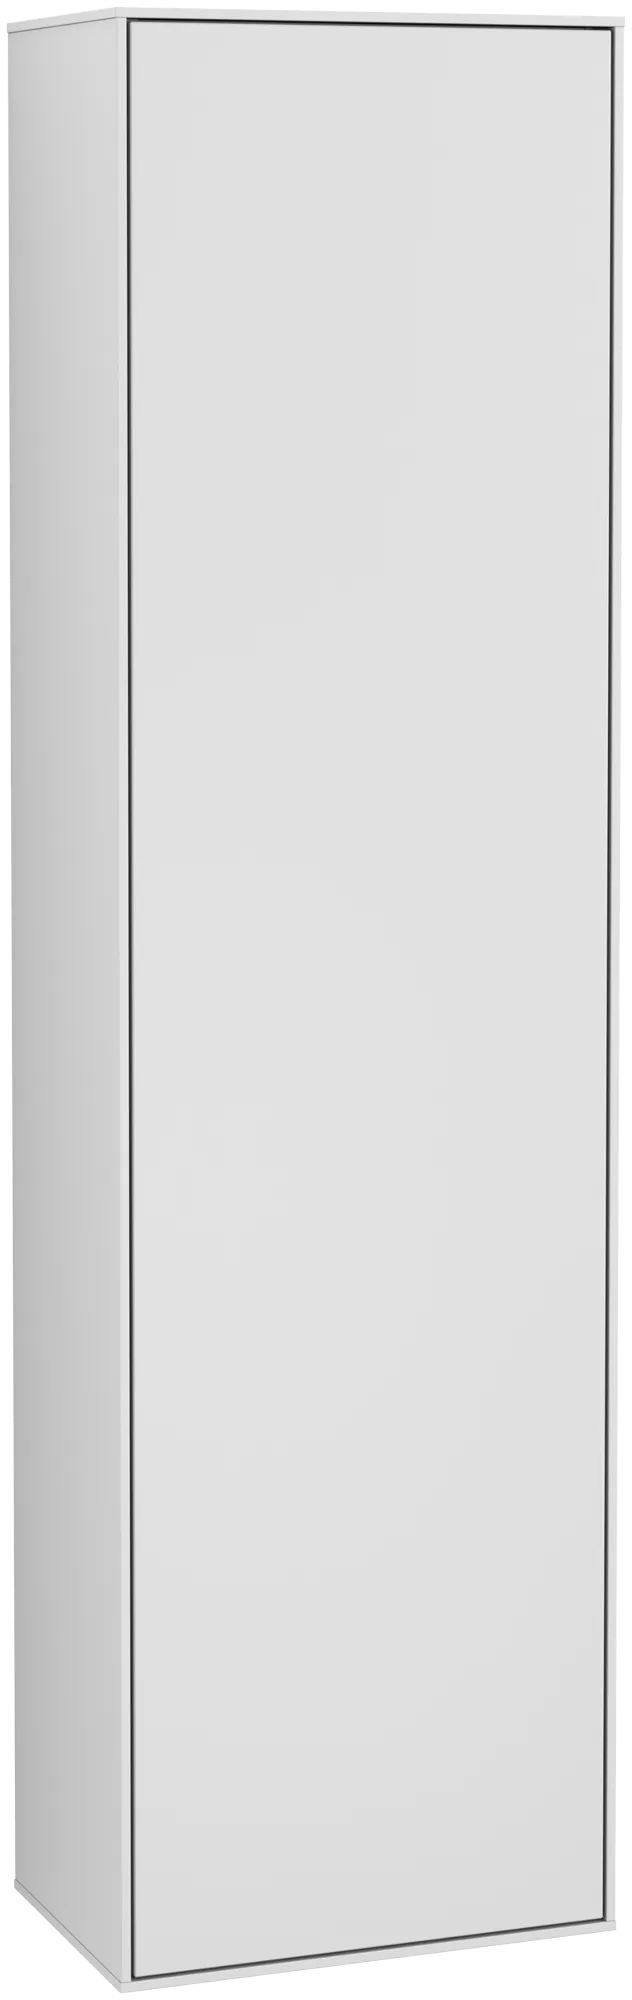 Bild von VILLEROY BOCH Finion Hochschrank, mit Beleuchtung, 1 Tür, 418 x 1516 x 270 mm, White Matt Lacquer #G49000MT